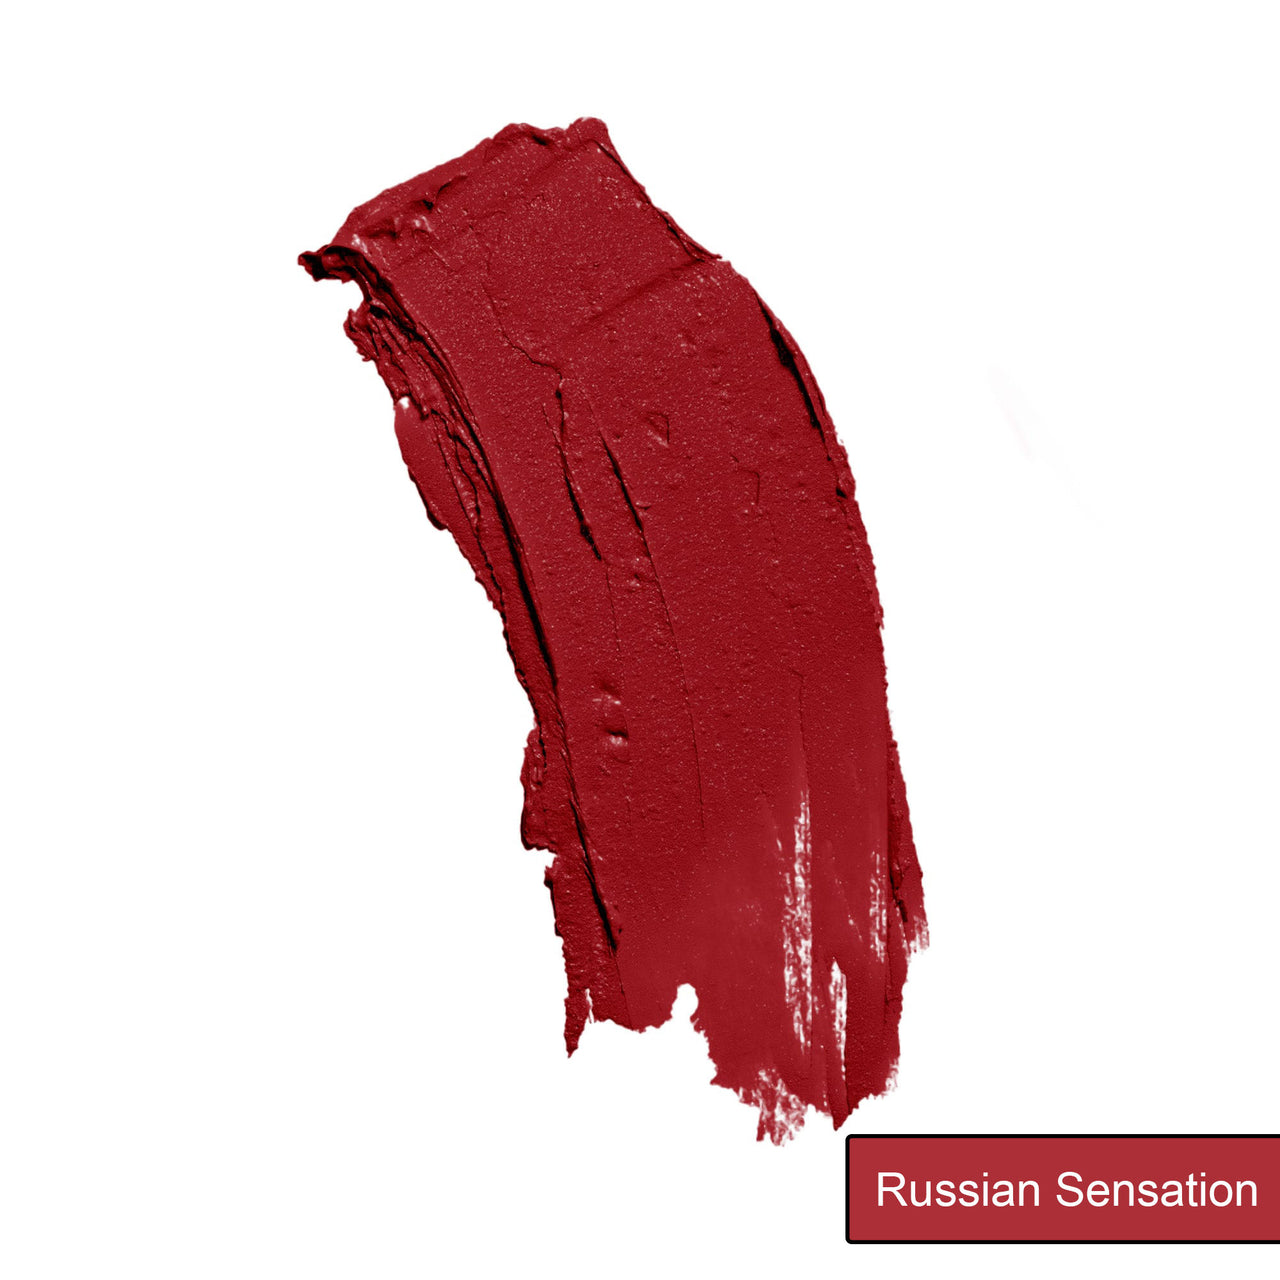 Russian Sensation